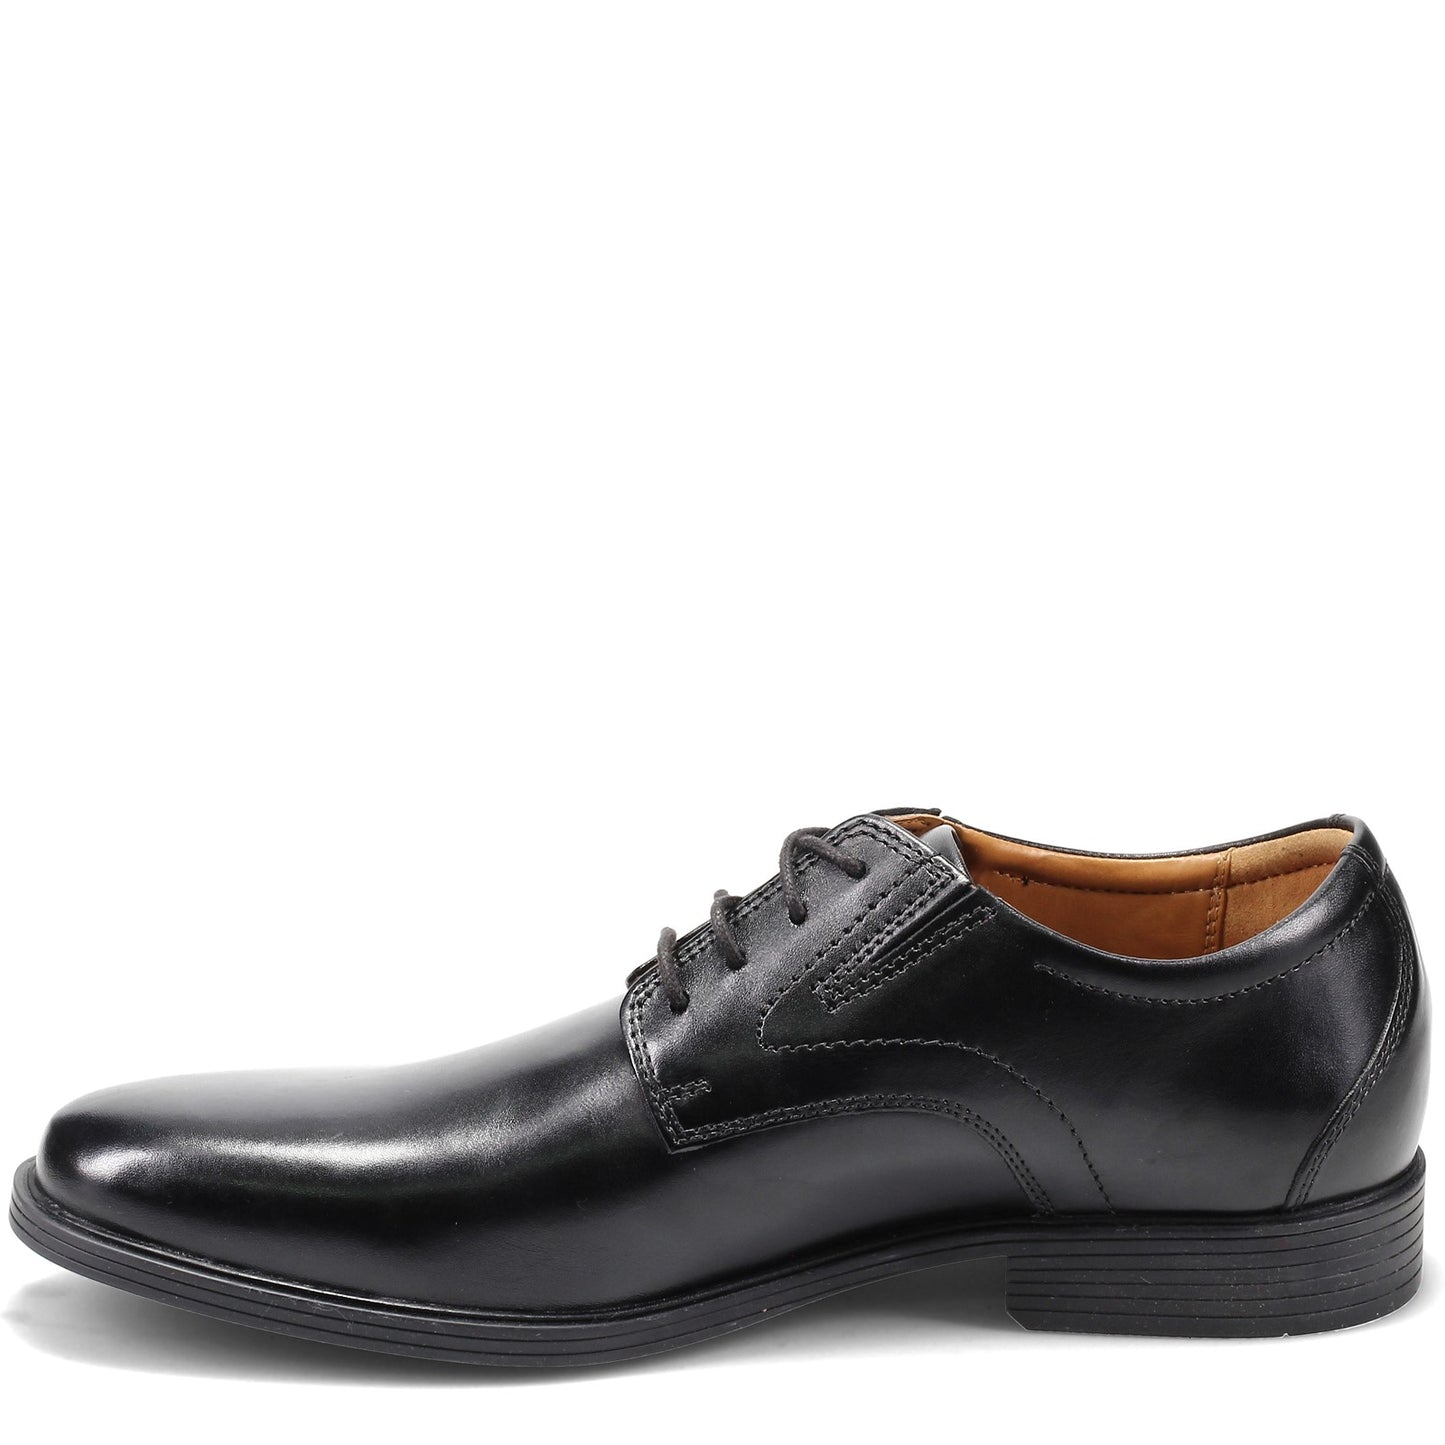 Peltz Shoes  Men's Clarks Whiddon Plain Toe Oxford BLACK 26152918